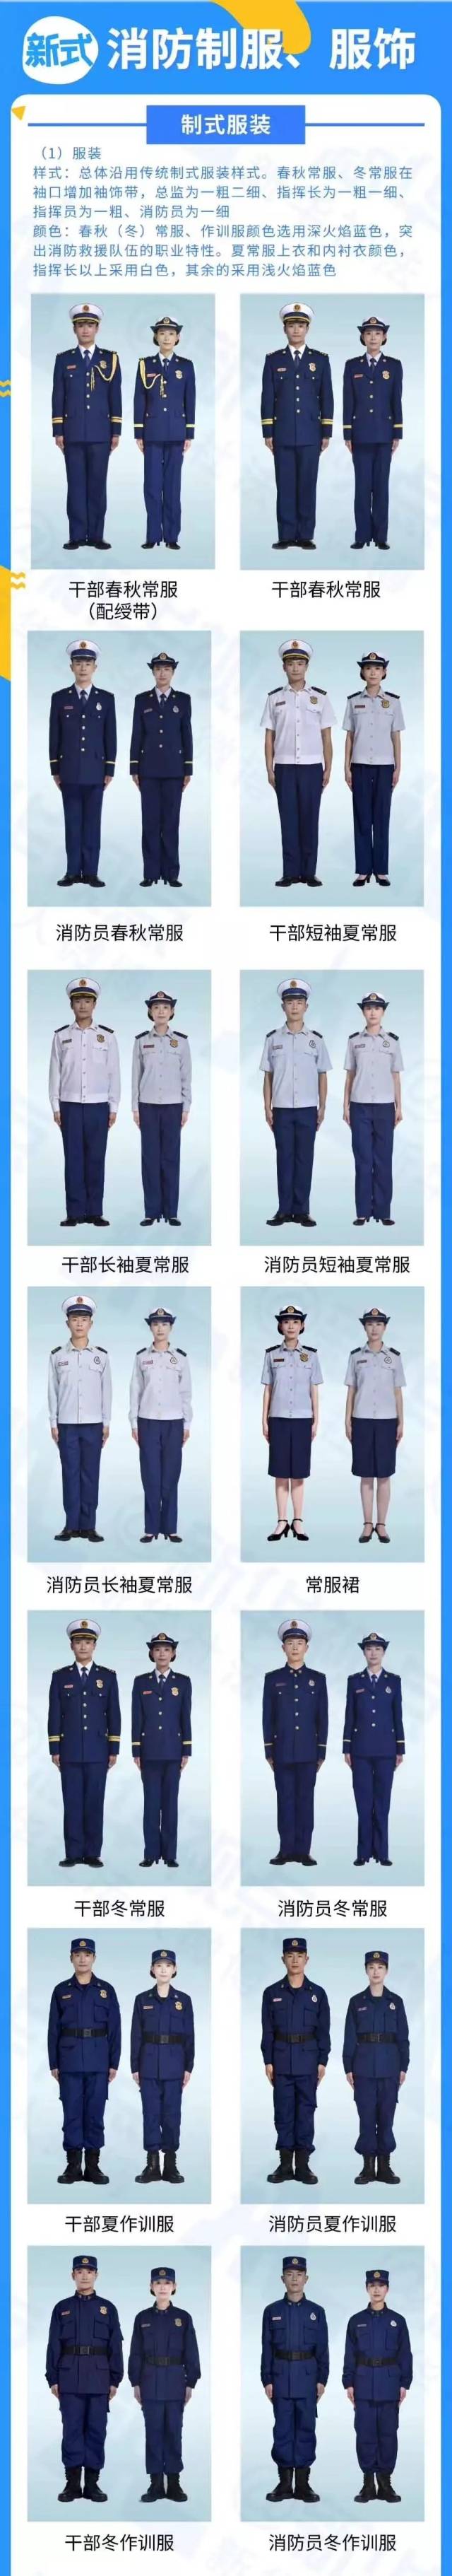 消防救援队伍火焰蓝制服:制服总体沿用传统制式服装样式,春秋常服